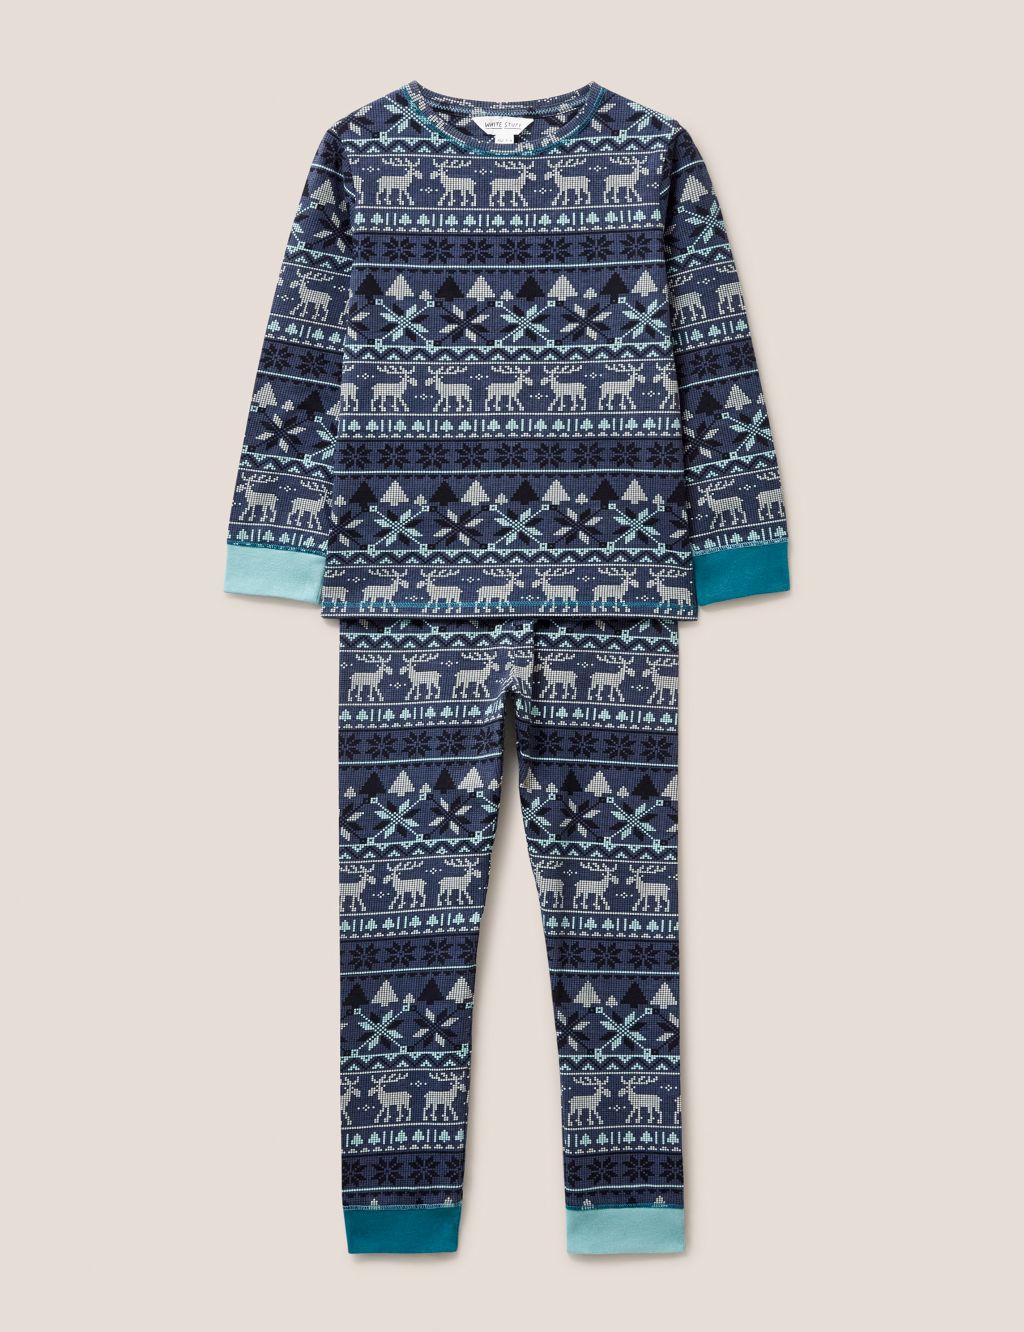 Cotton Rich Moose Fair Isle Pyjamas (3-10 Yrs) image 1